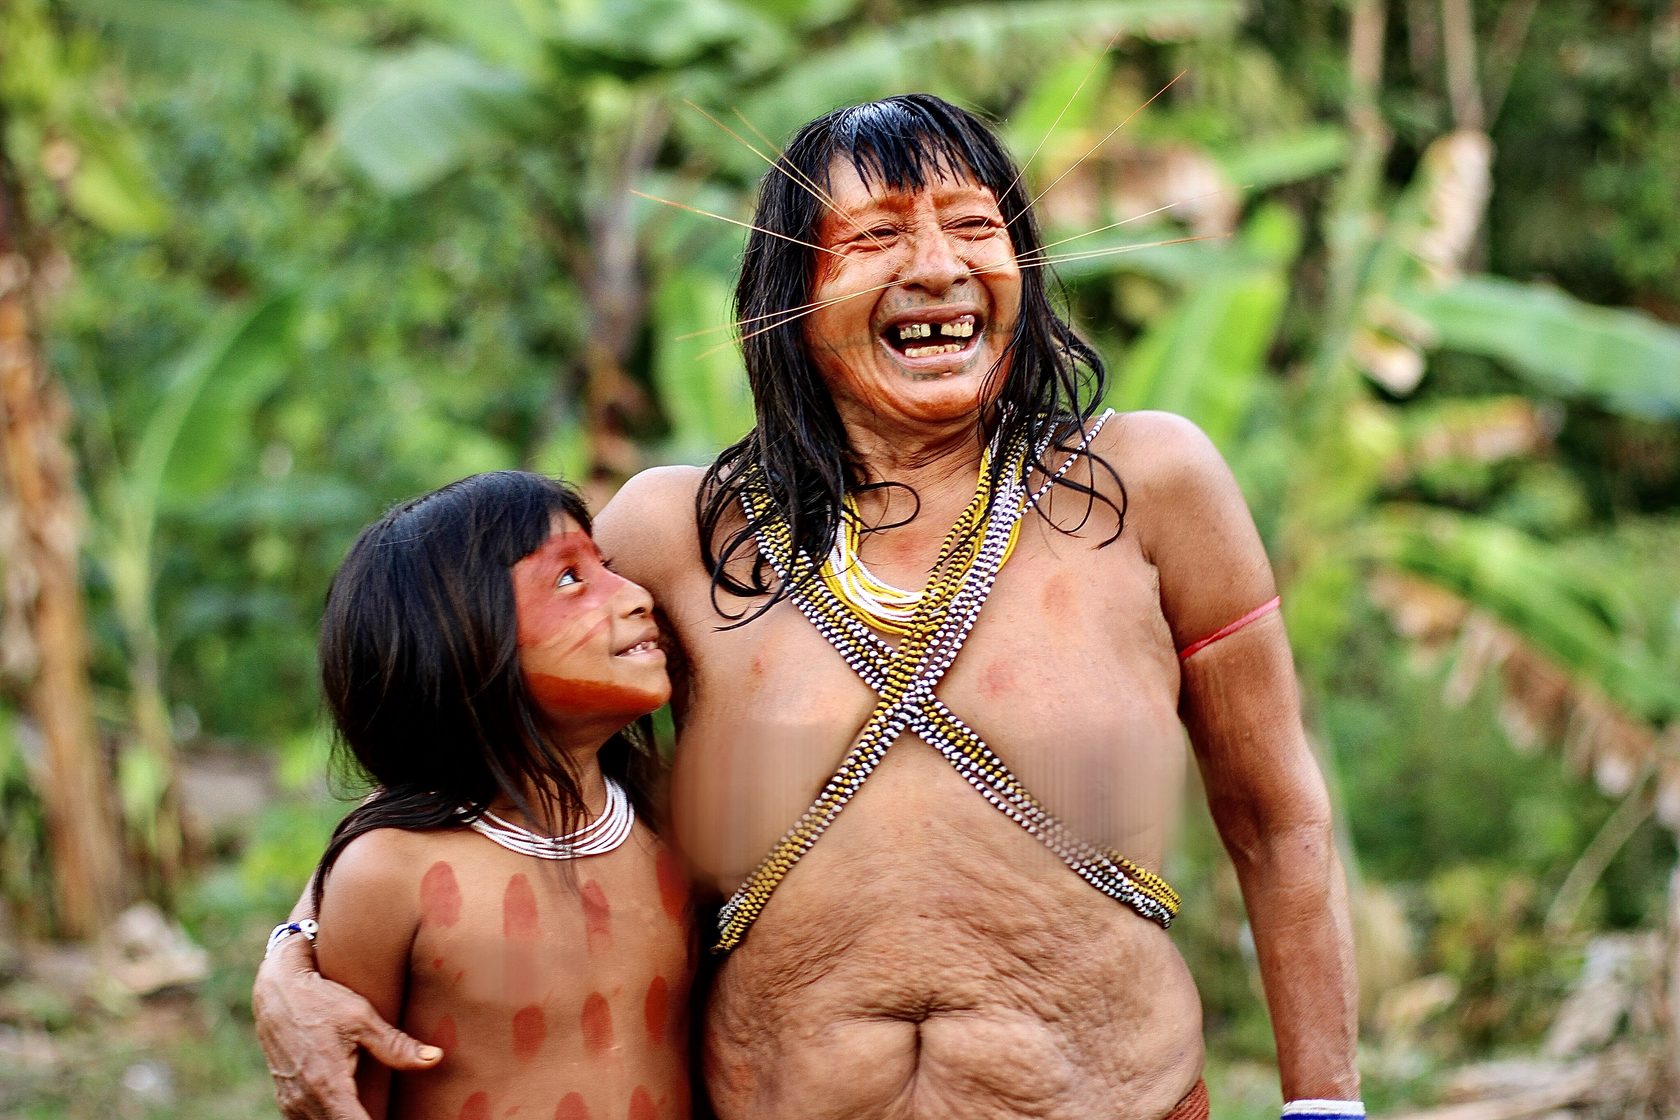 племена где женщины ходят голыми фото 68